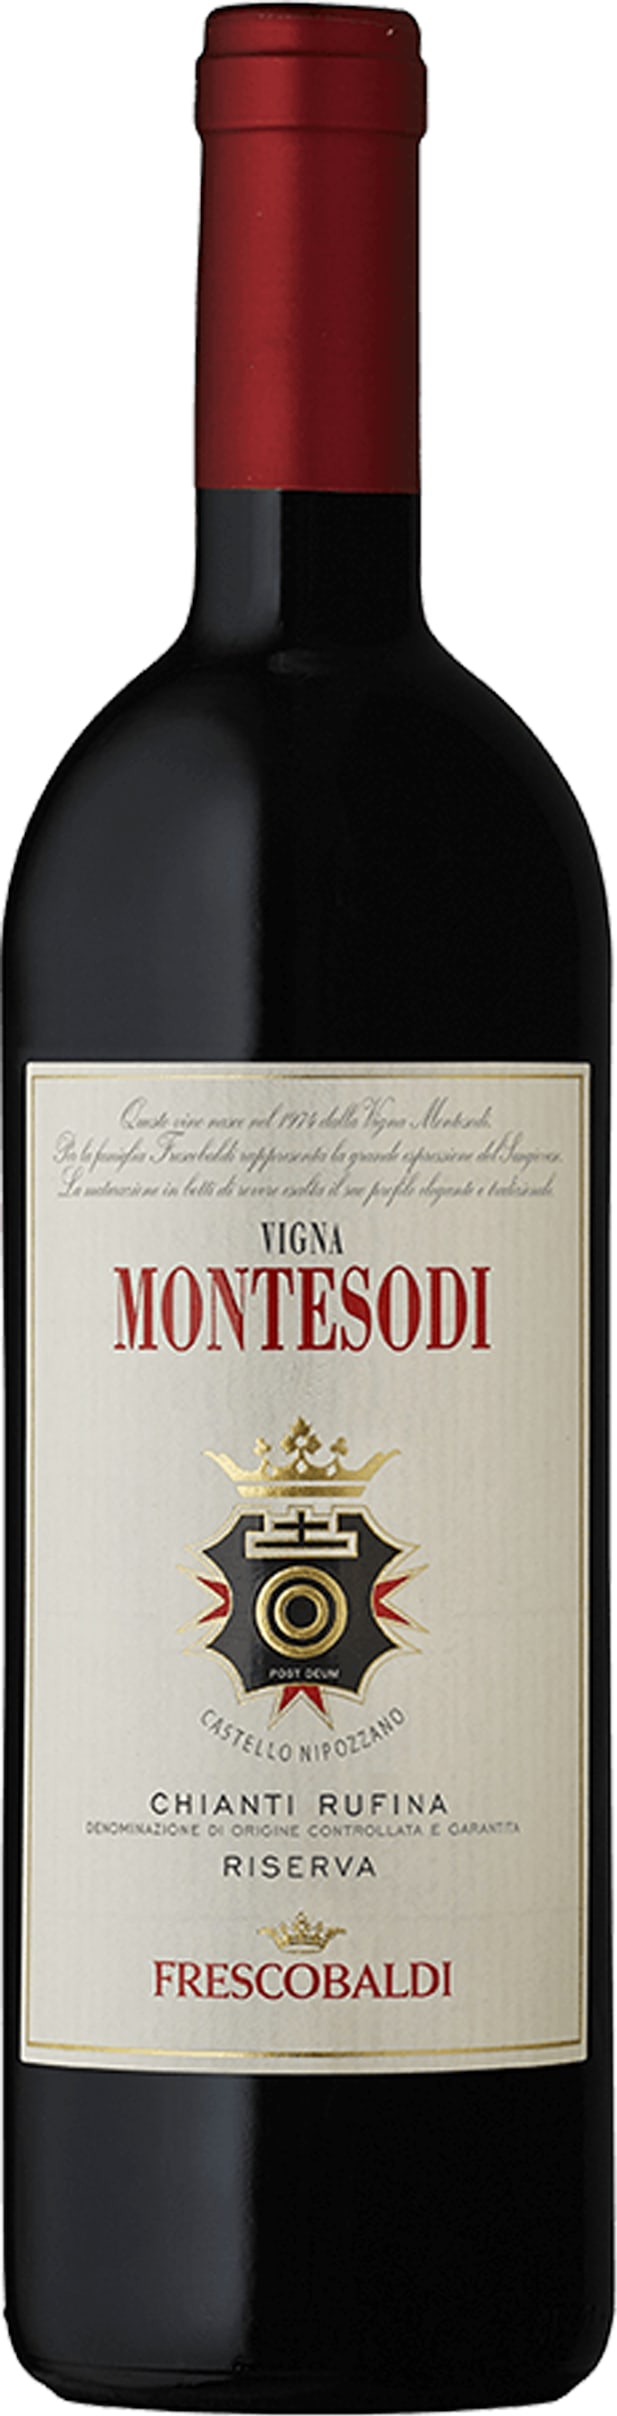 Frescobaldi Montesodi 2006 75cl - Buy Frescobaldi Wines from GREAT WINES DIRECT wine shop